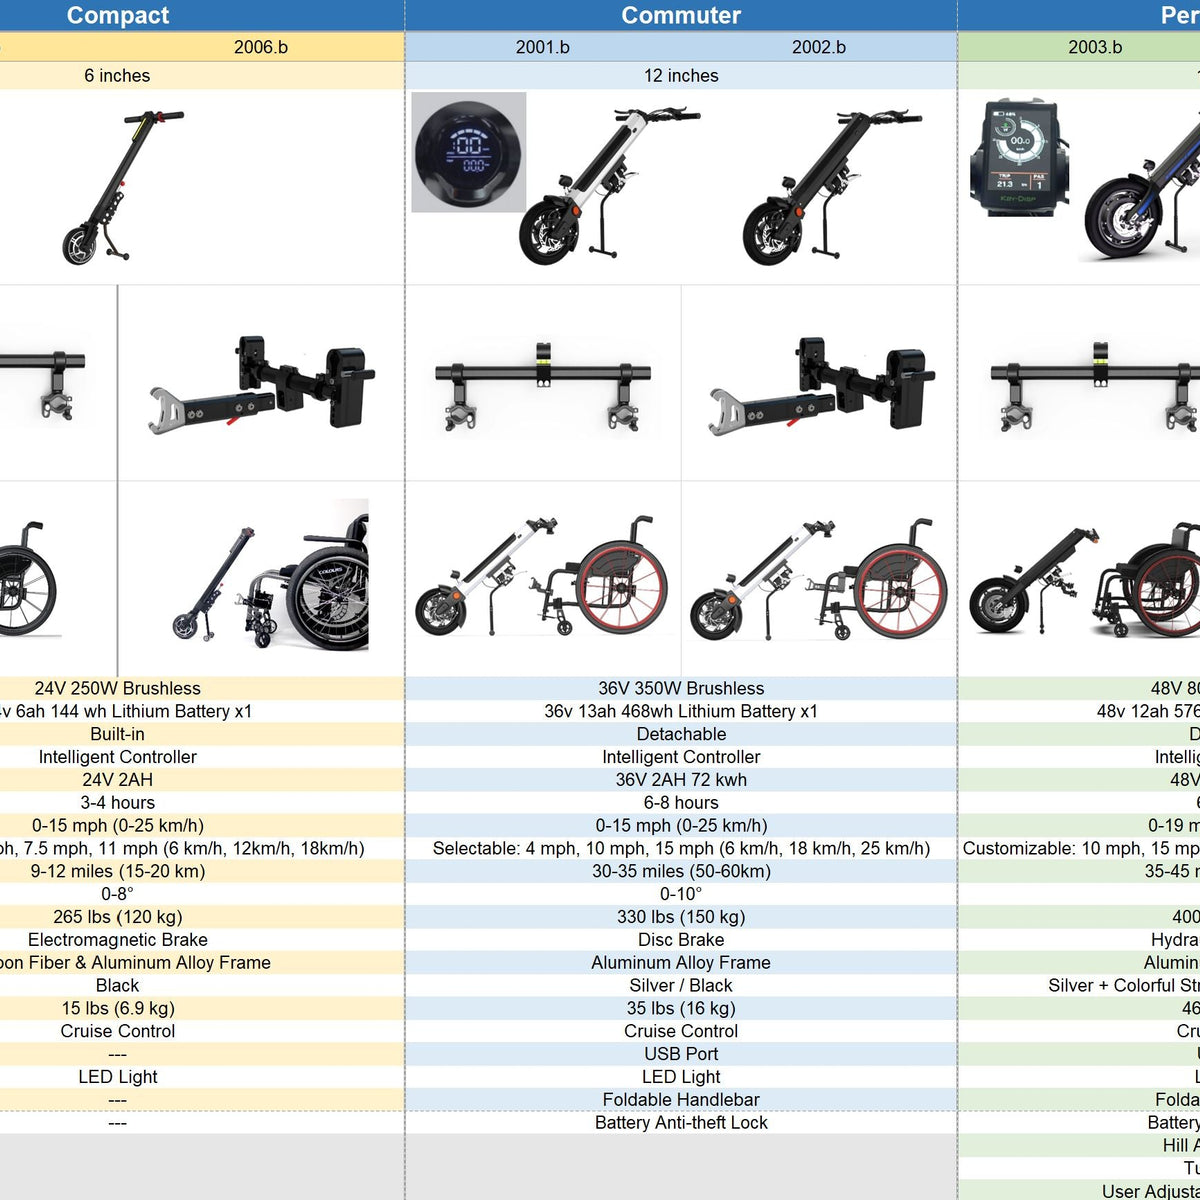 Manuel tekerlekli sandalyeler için kompakt elektrikli el yapımı